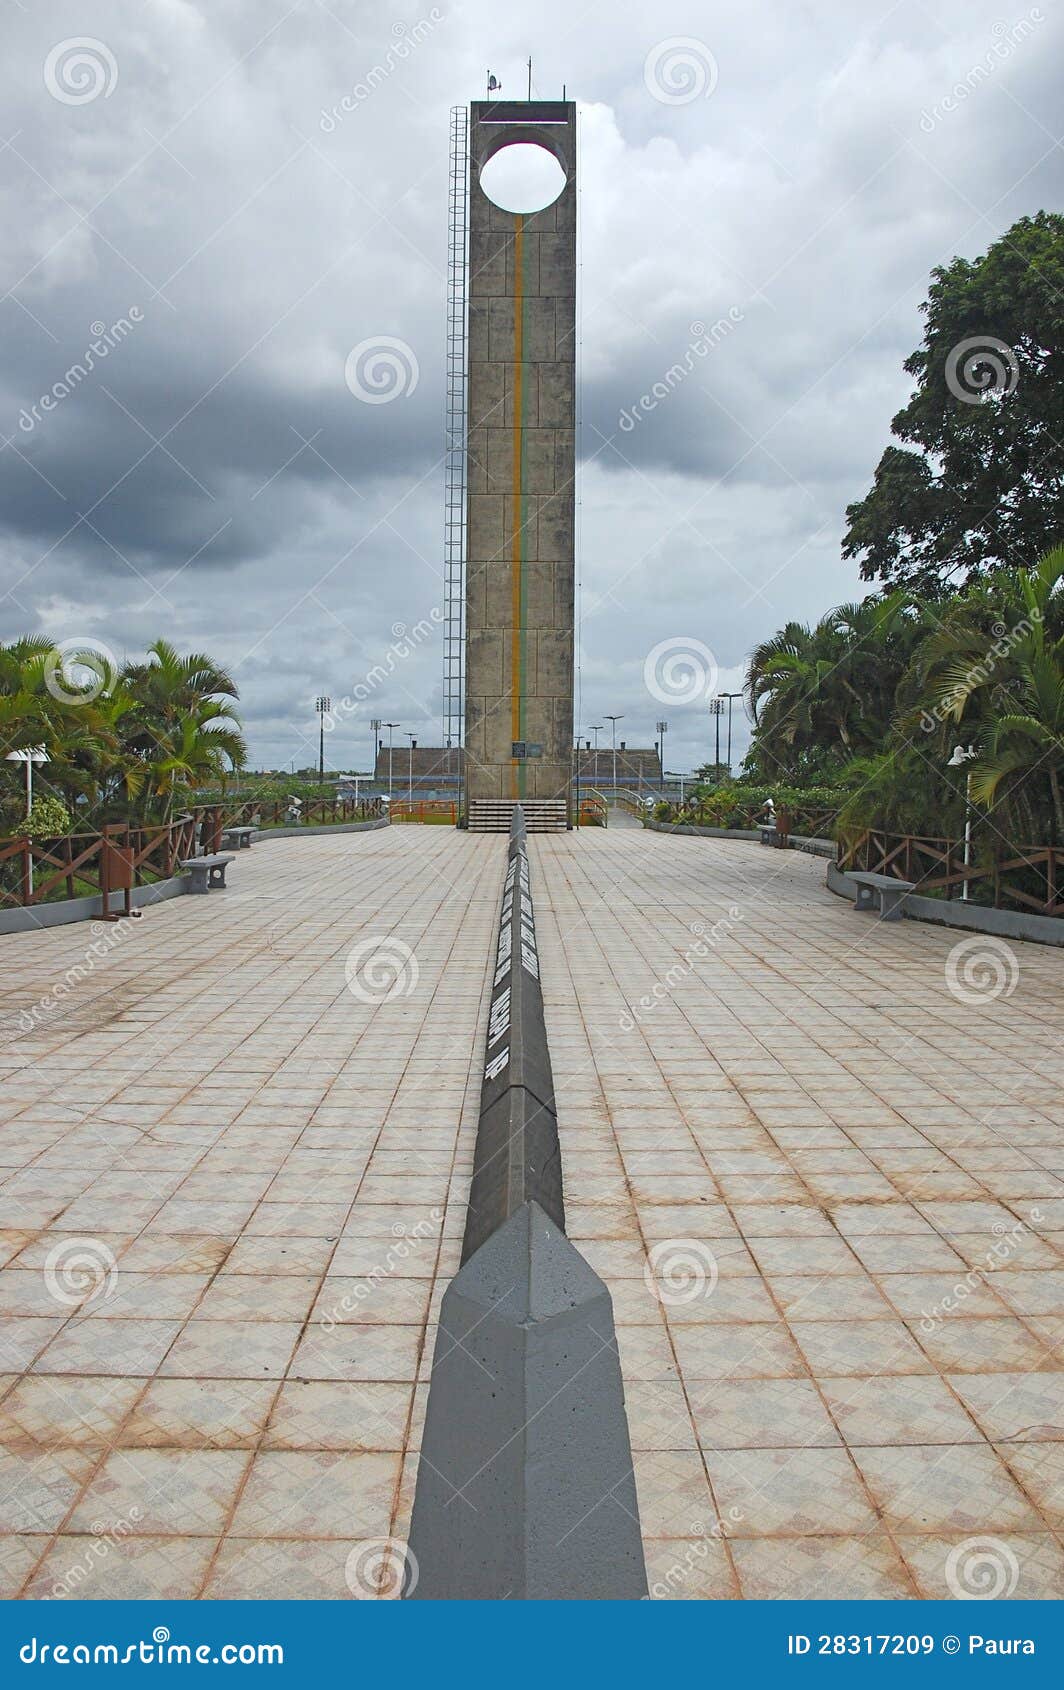 equator line